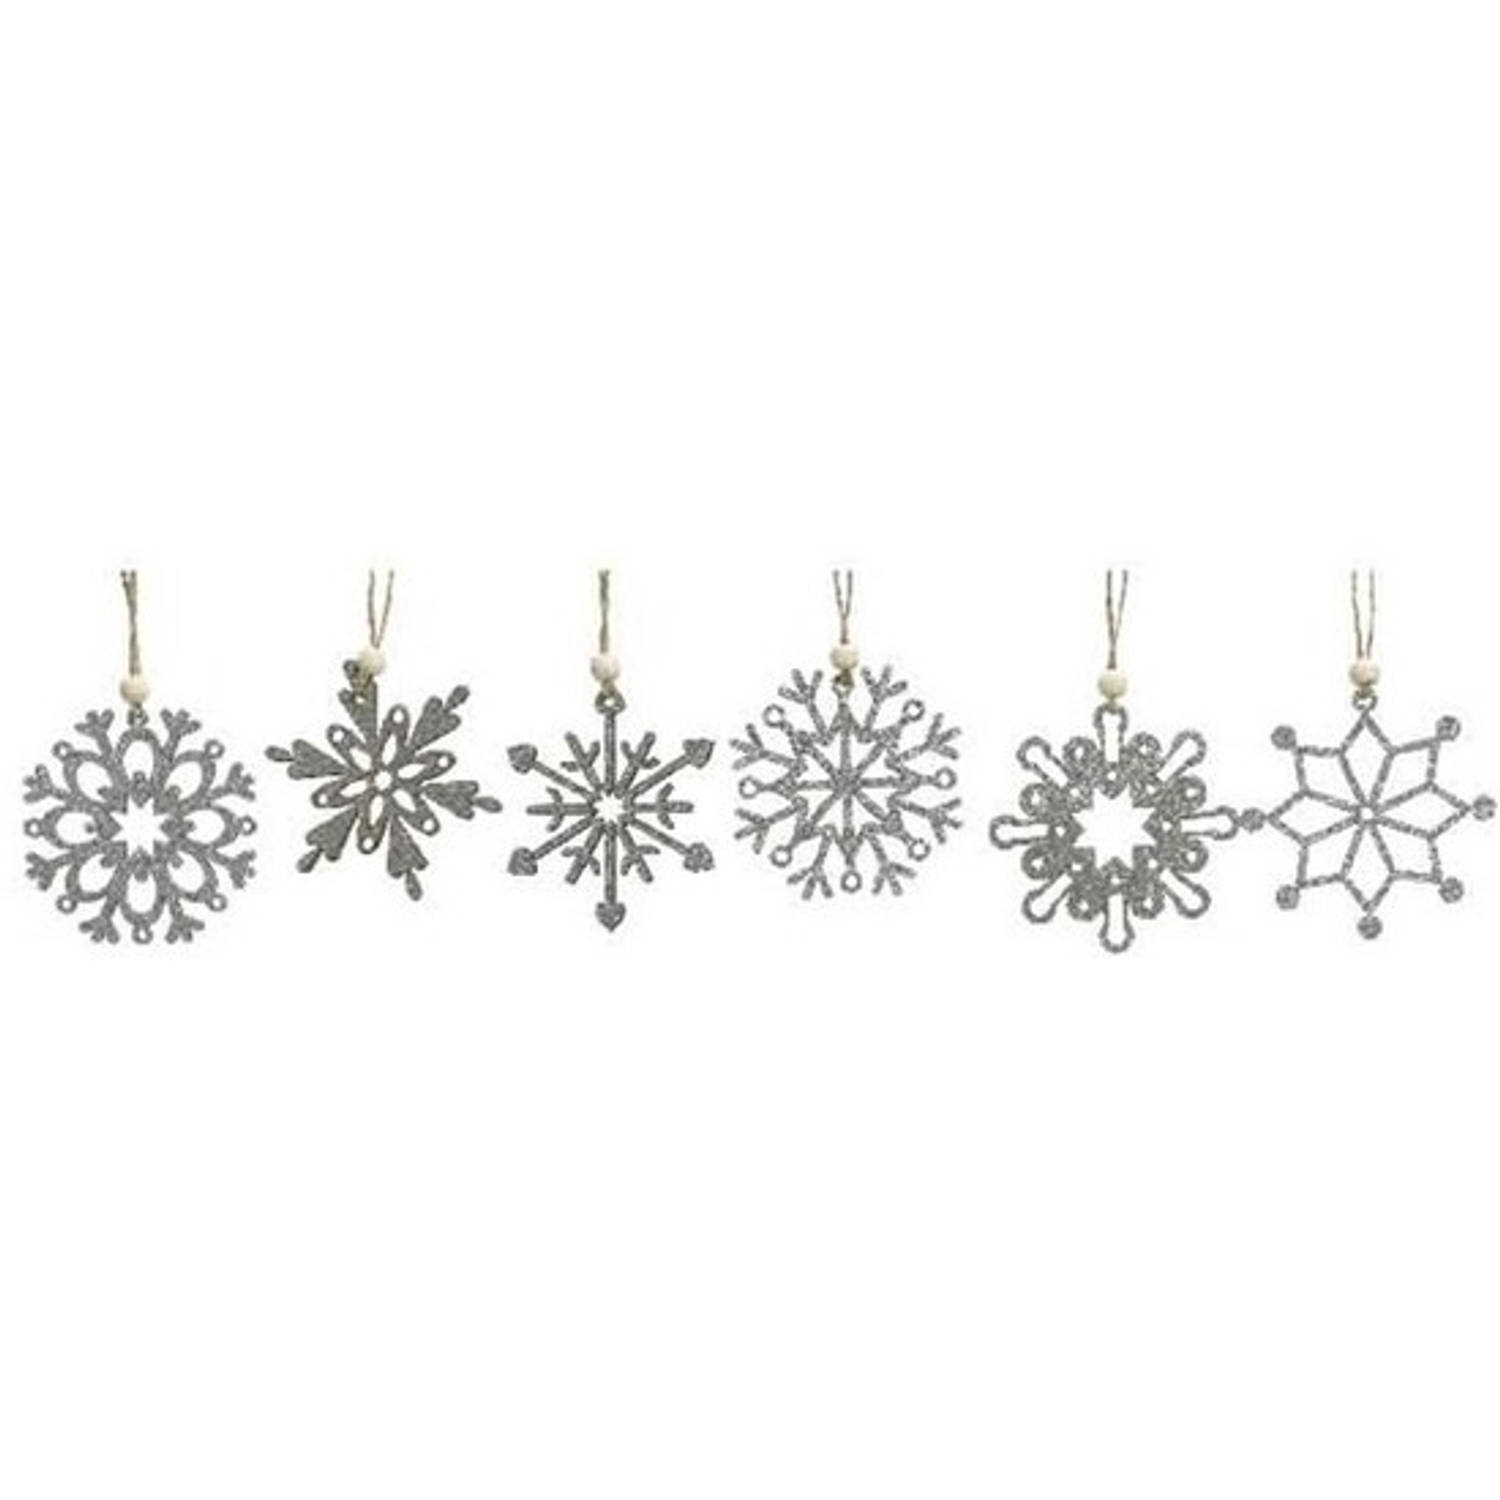 6x Houten Sneeuwvlok Kersthangers Zilver 6 Cm Kerstboomversiering